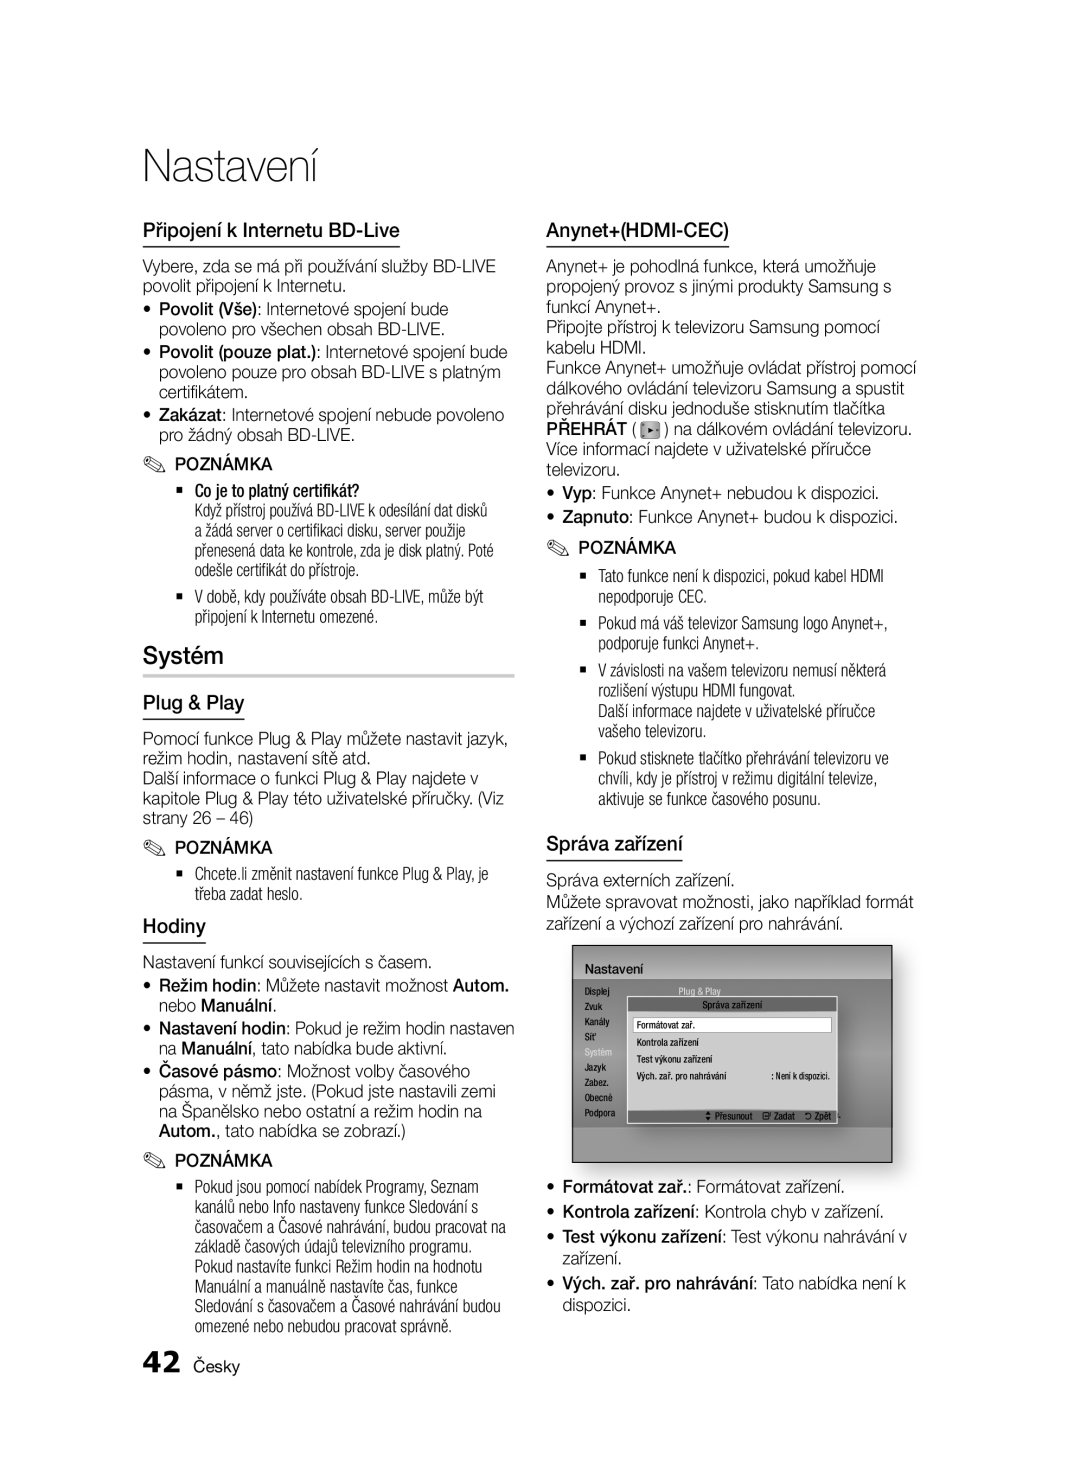 Samsung BD-E6300/EN manual Systém, Připojení k Internetu BD-Live, Plug & Play, Hodiny, Anynet+HDMI-CEC, Správa zařízení 